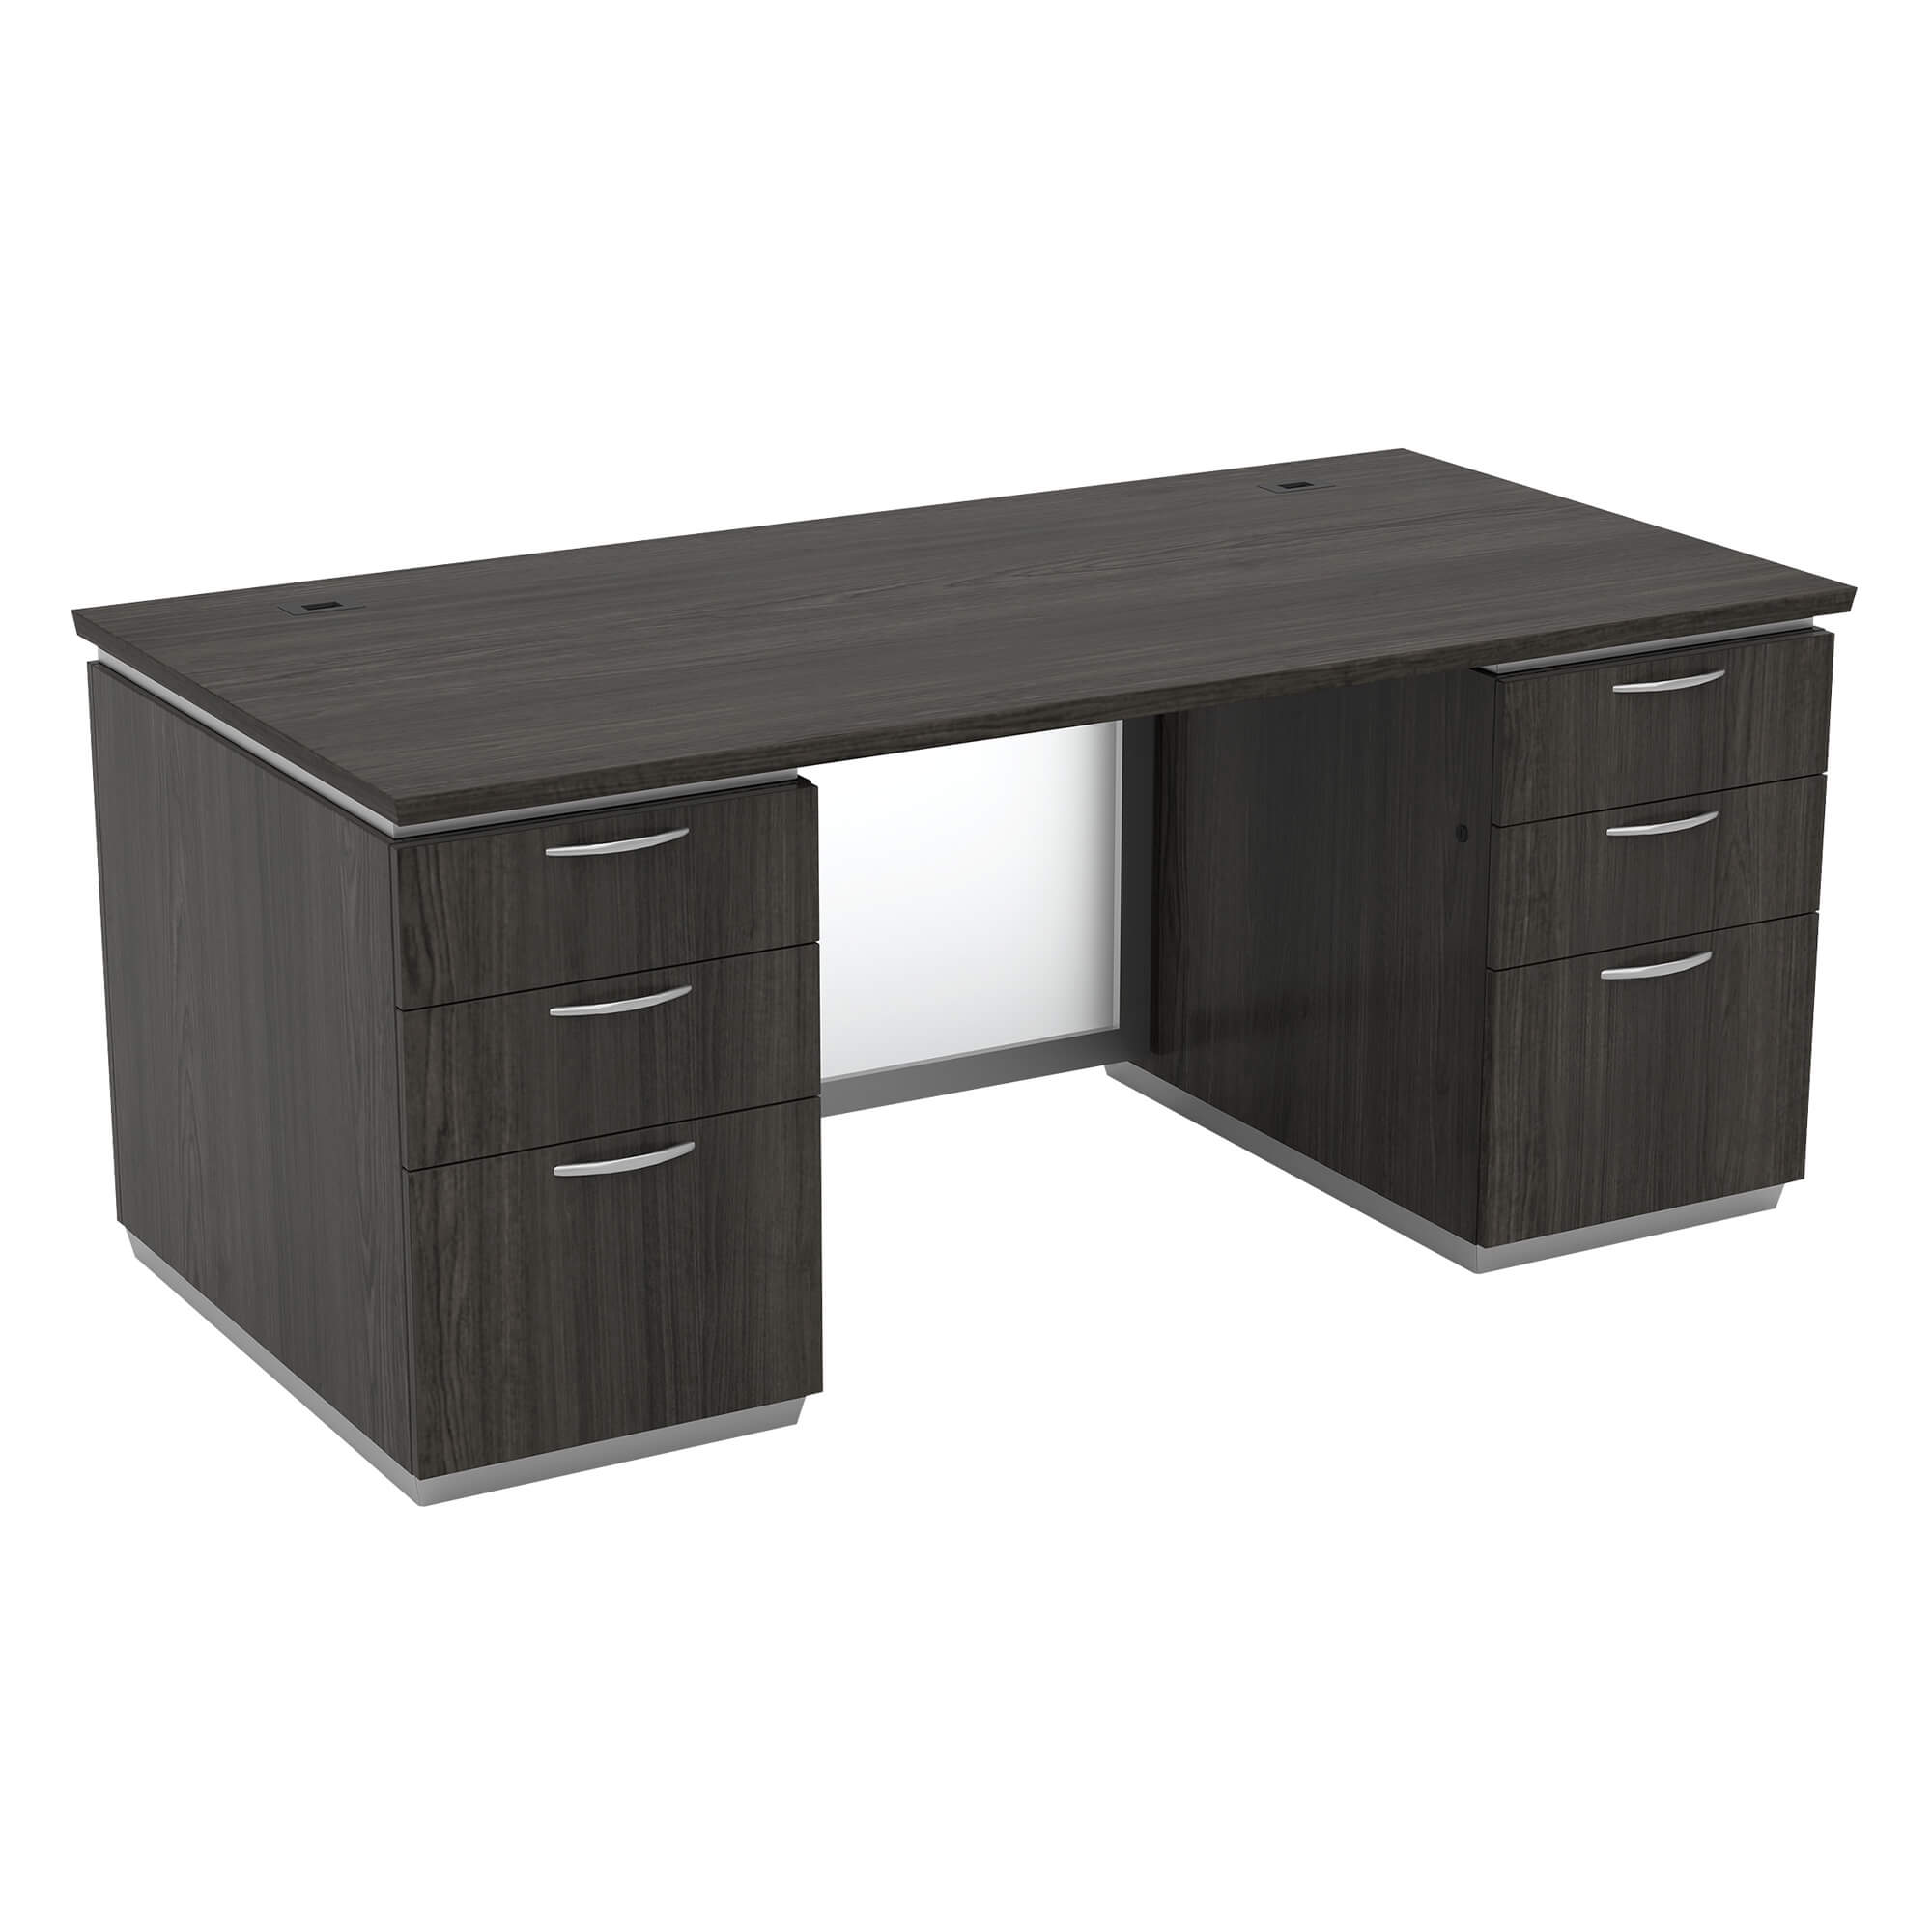 black-tie-desk-furniture-double-pedestal-desk-frosted-glass.jpg